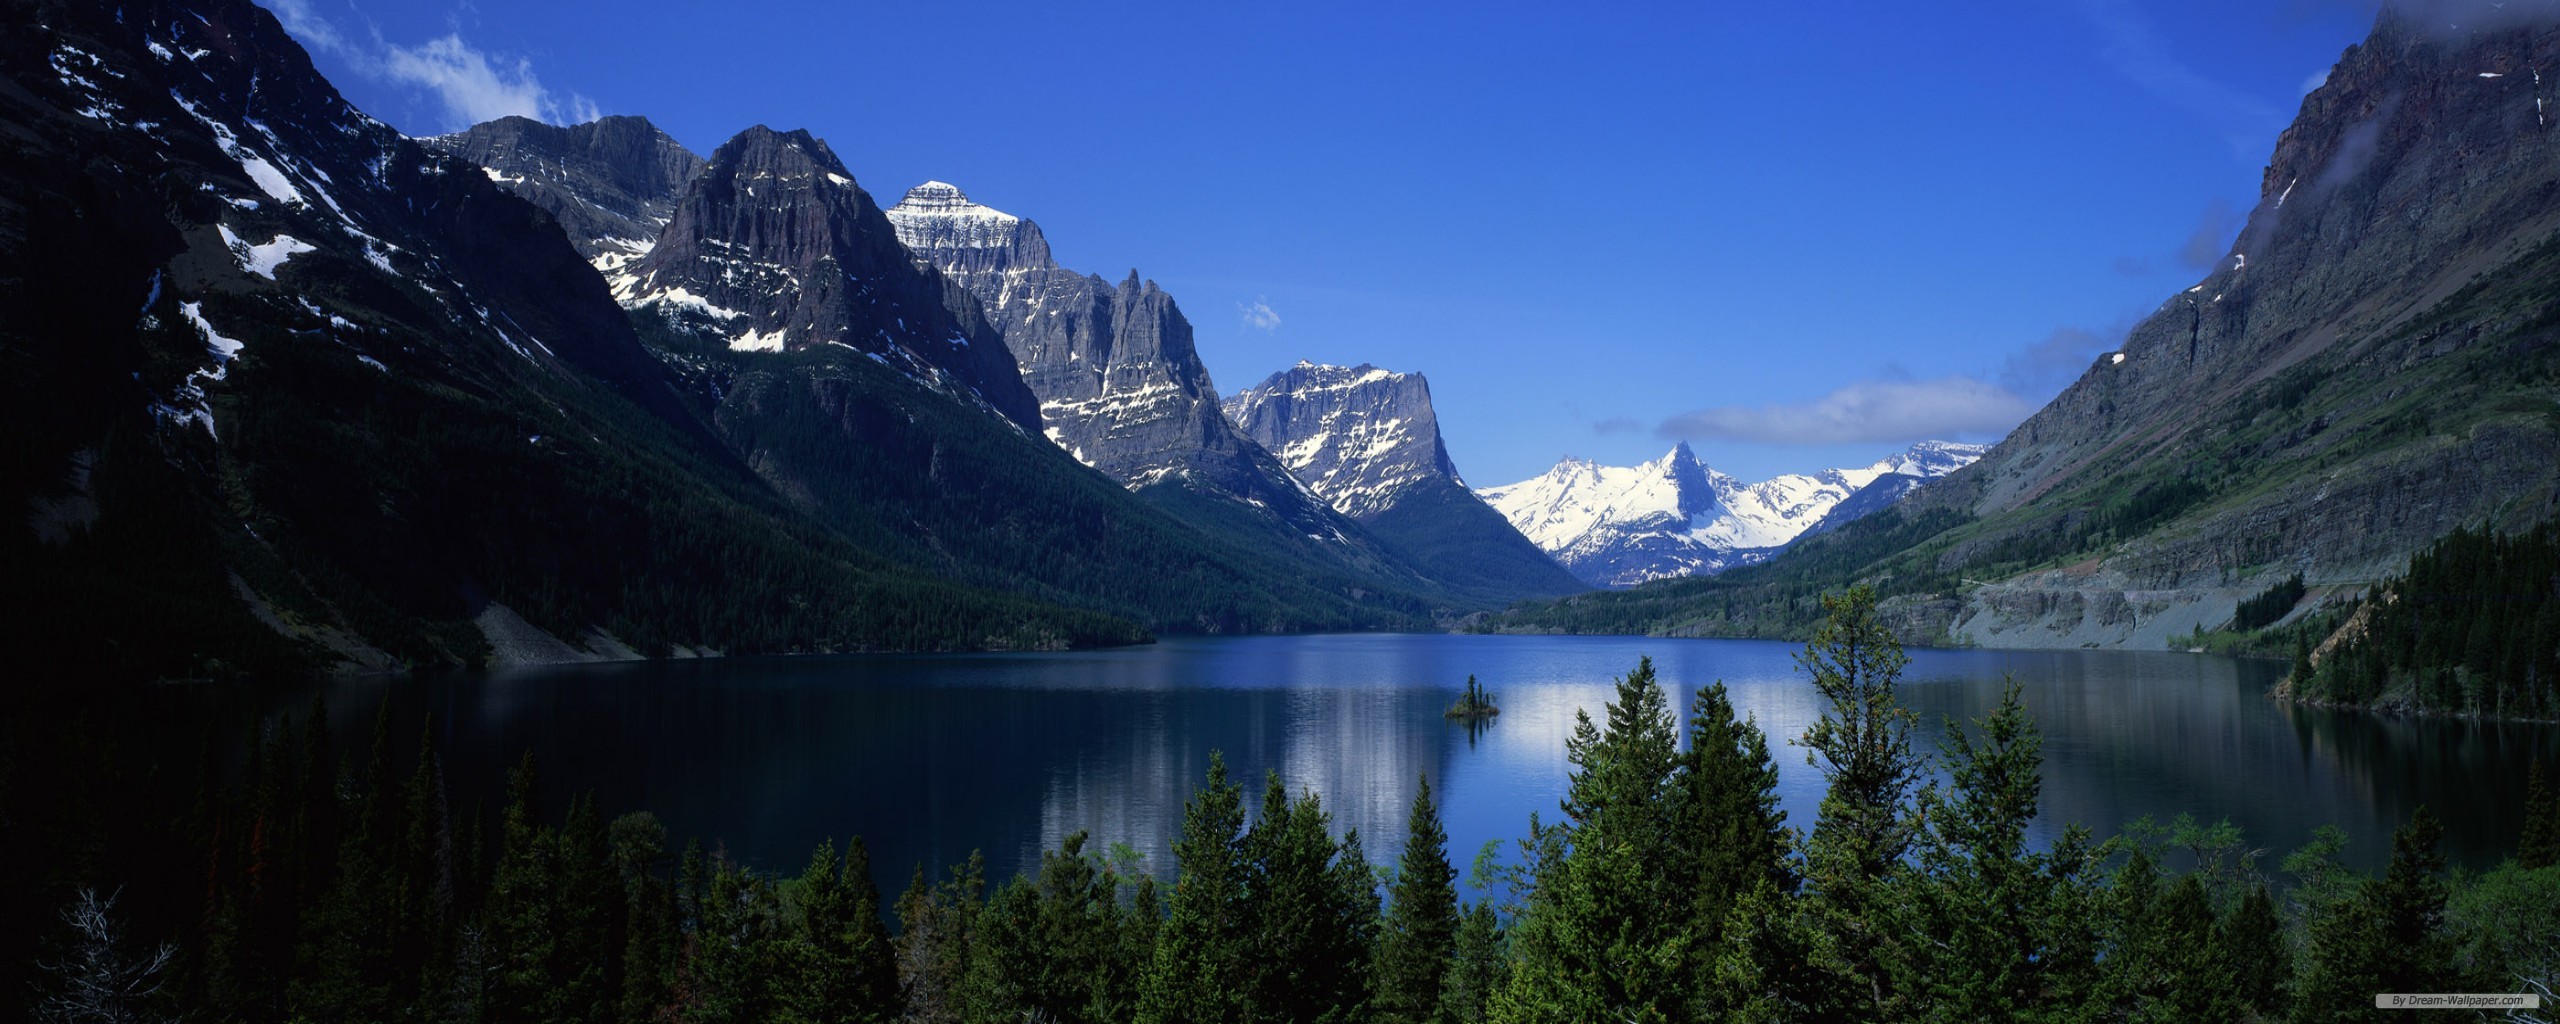 ダブルスクリーン壁紙,山,自然の風景,自然,山脈,氷河湖